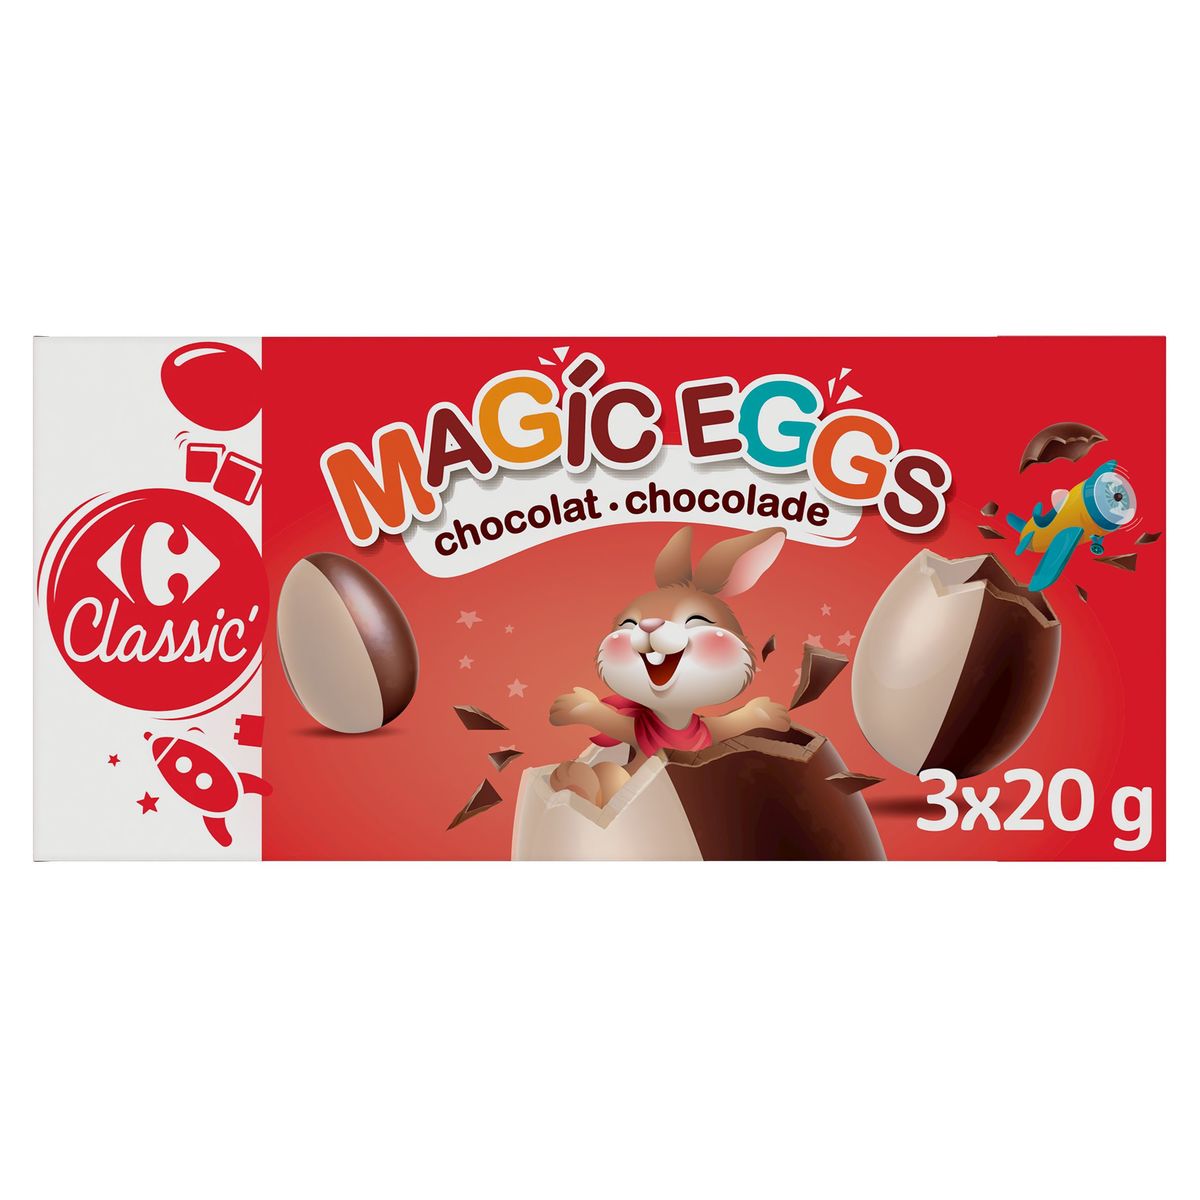 Carrefour Classic' Magic Eggs Chocolat 3 x 20 g